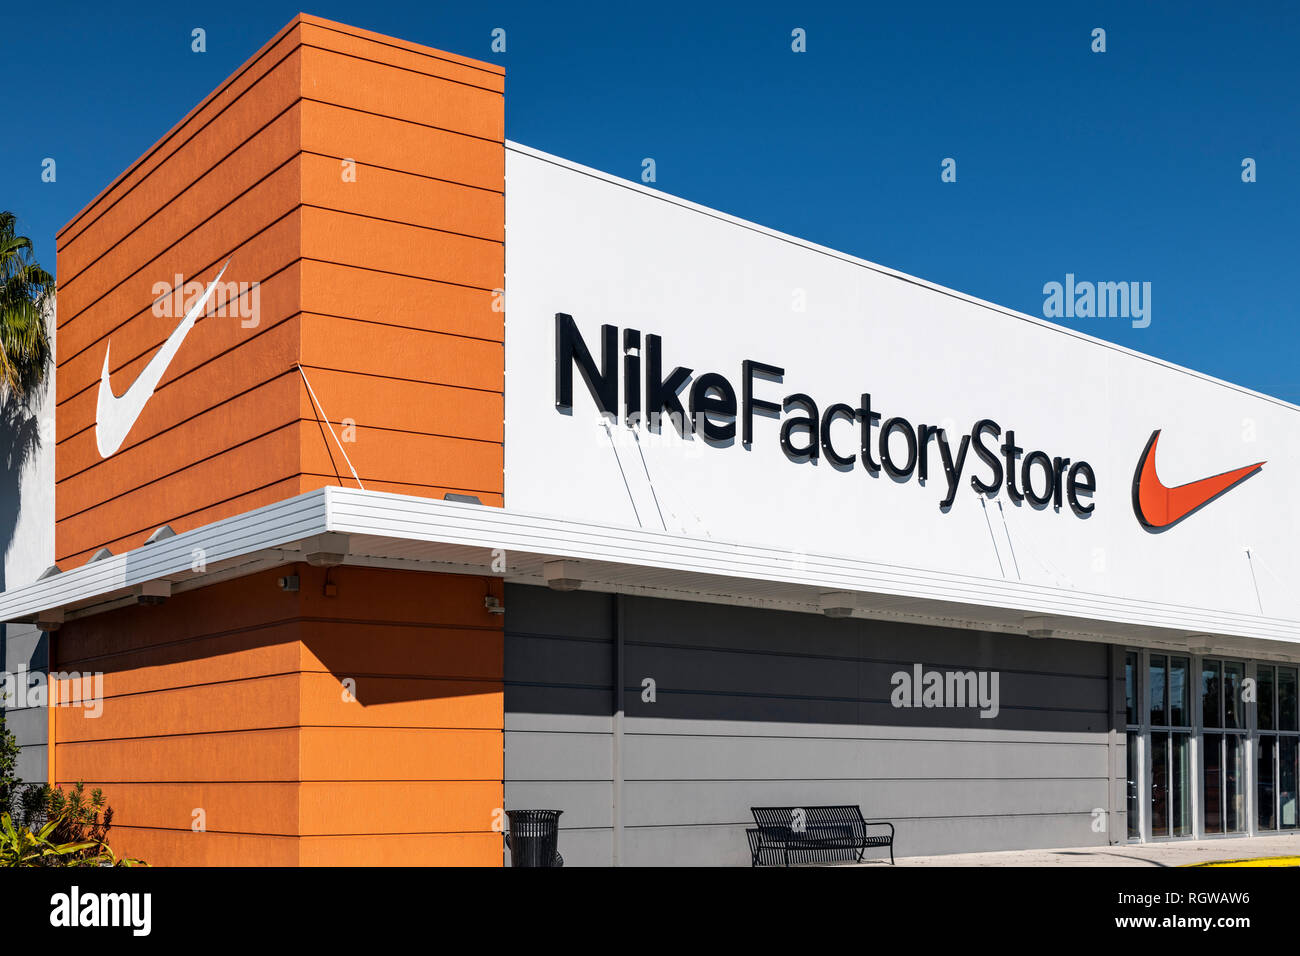 Nike factory store immagini e fotografie stock ad alta risoluzione - Alamy